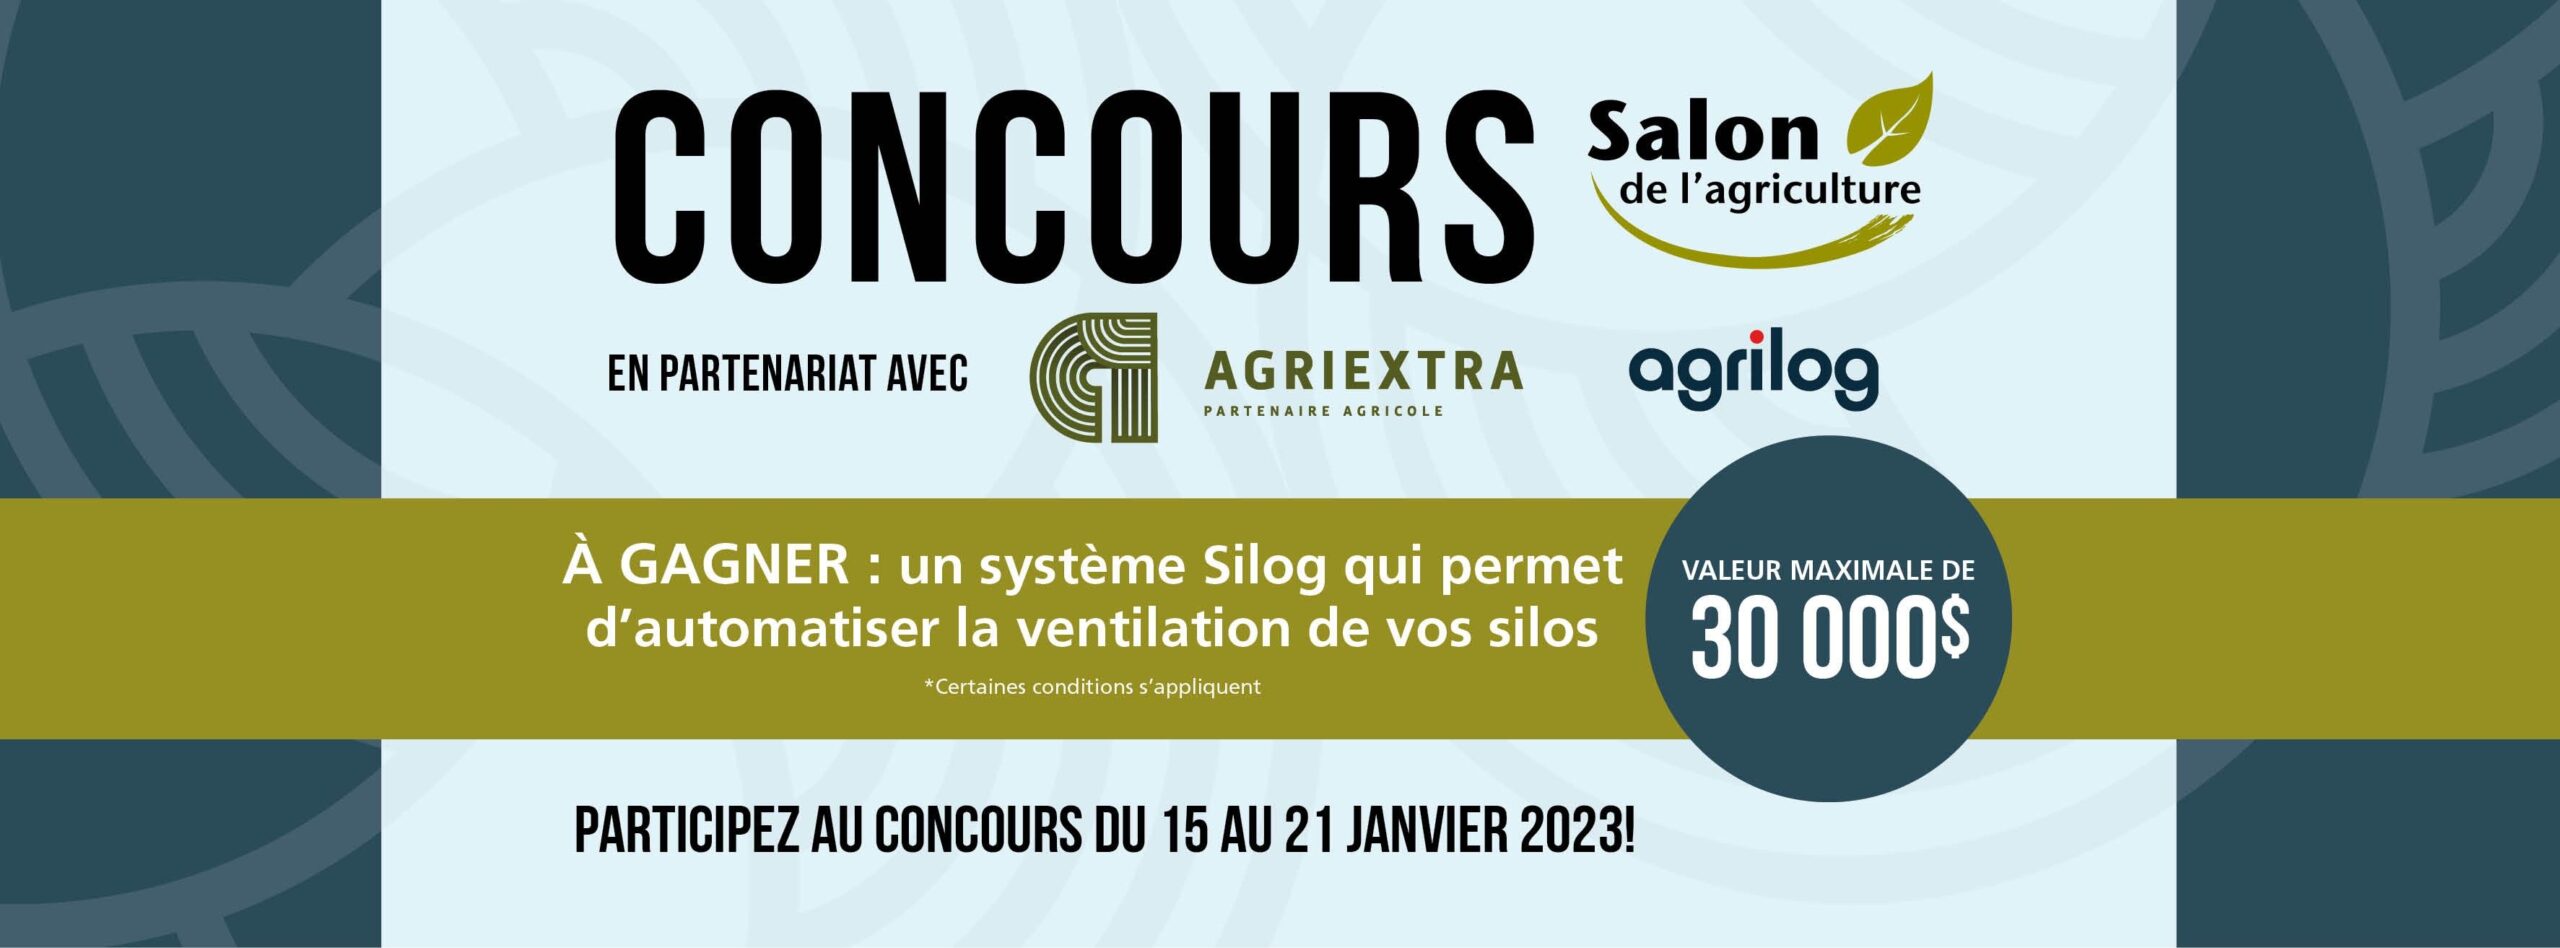 CONCOURS Salon de l’agriculture
En partenariat avec Agriextra et Agrilog
À Gagner; un système Silog qui permet d’automatiser la ventilation de vos silos, valeur maximale de 30000$.